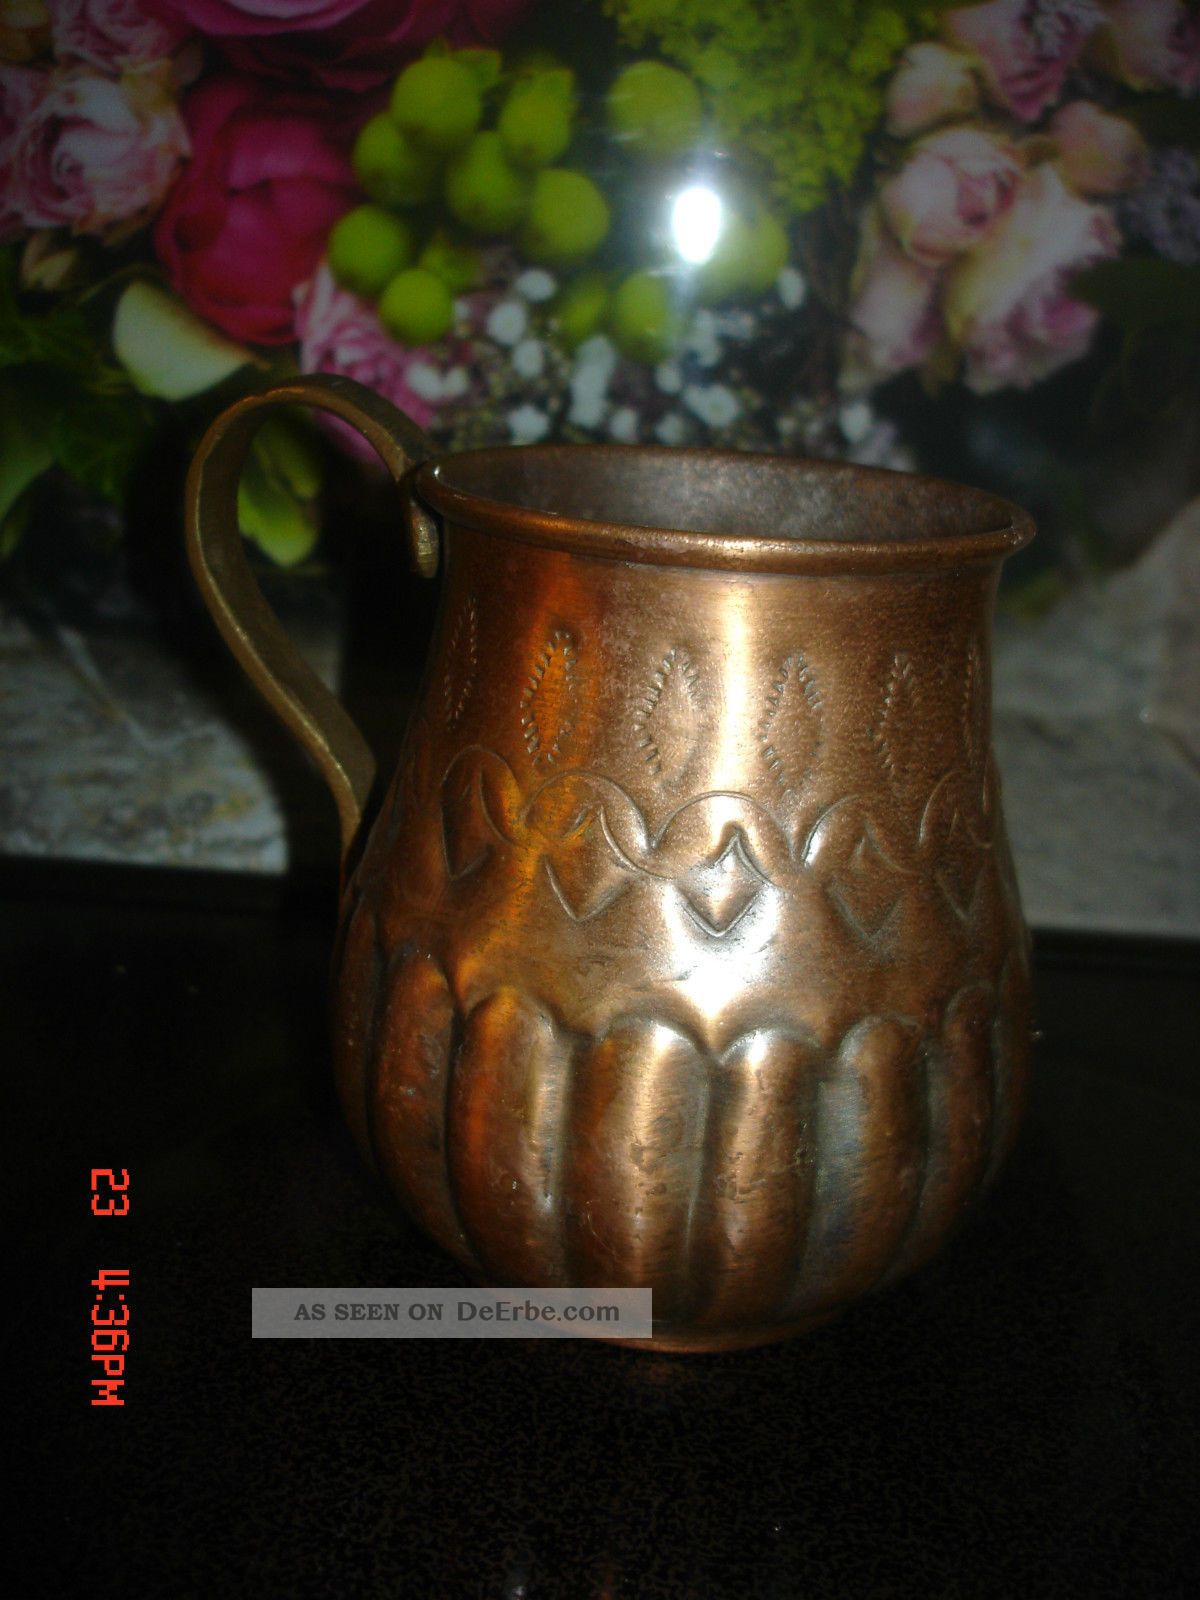 Kupfer Messing Kombiniert Vase Mit Gravur Alt Dachbodenfund 10 Cm Raritäten Oma Kupfer Bild